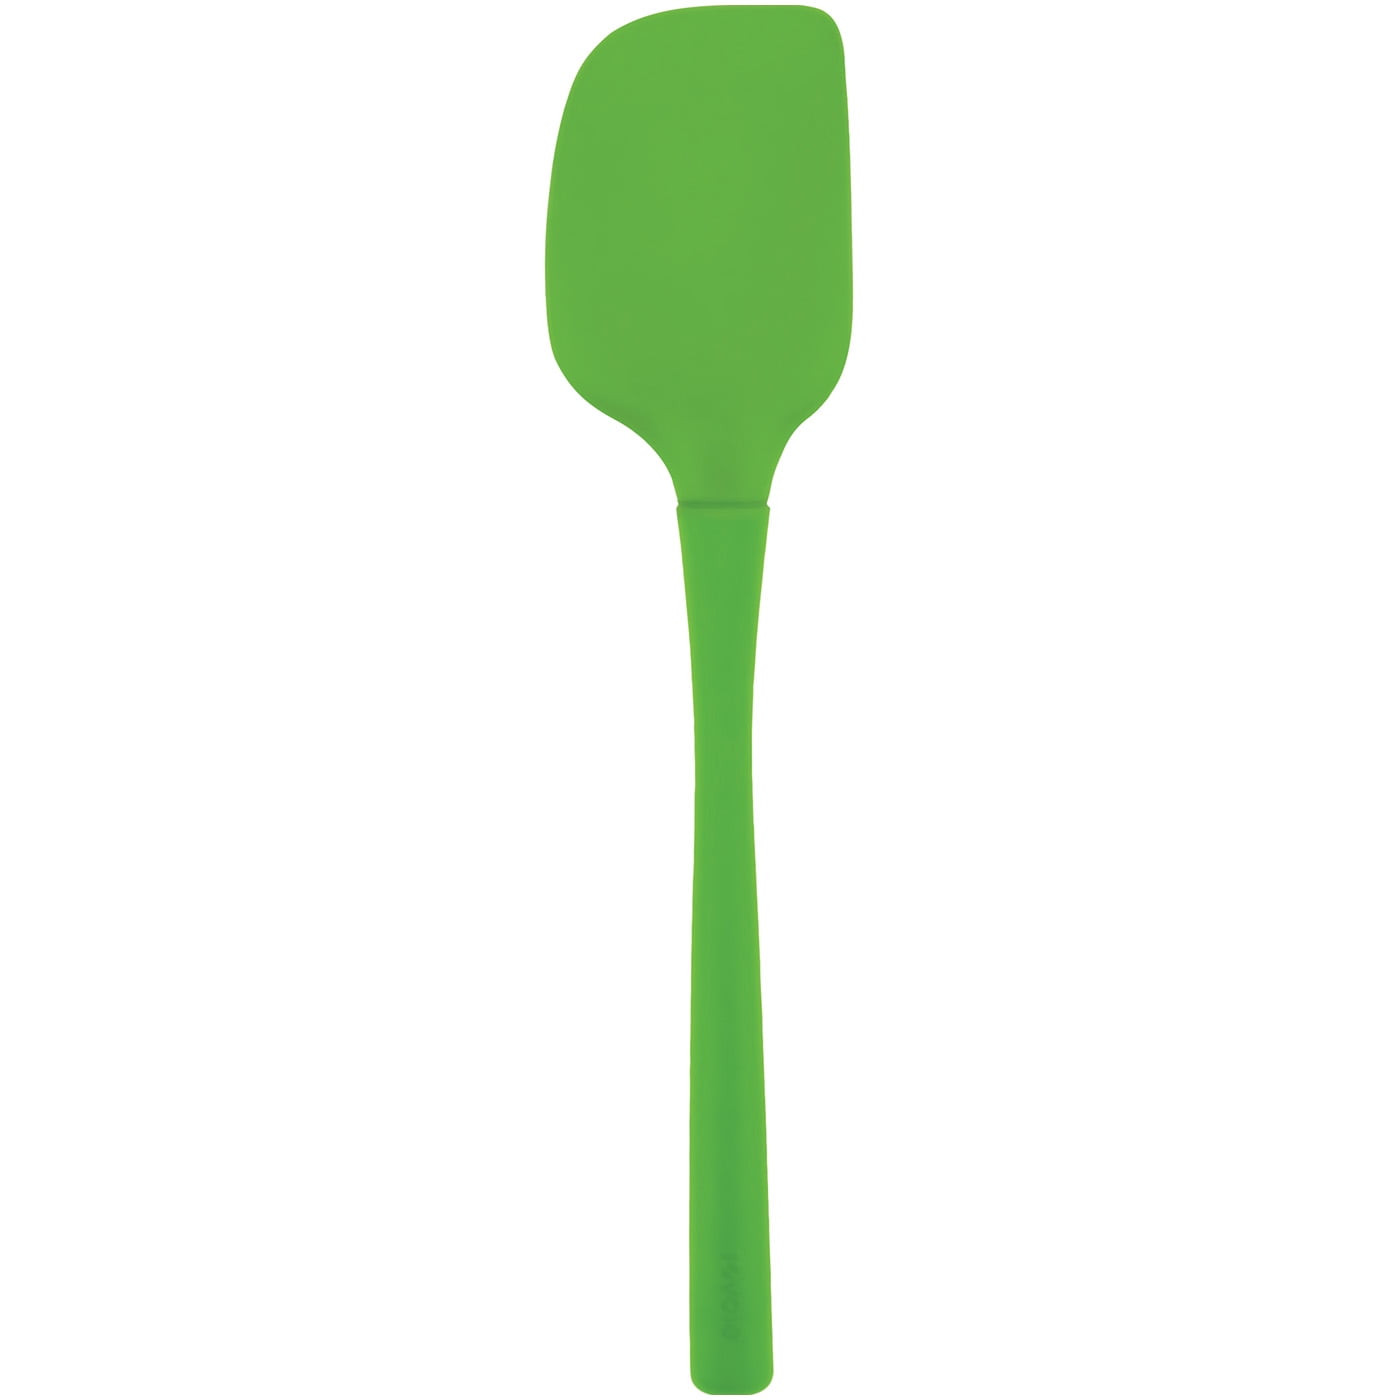 Tovolo flex-core all silicone blender spatula - light aqua